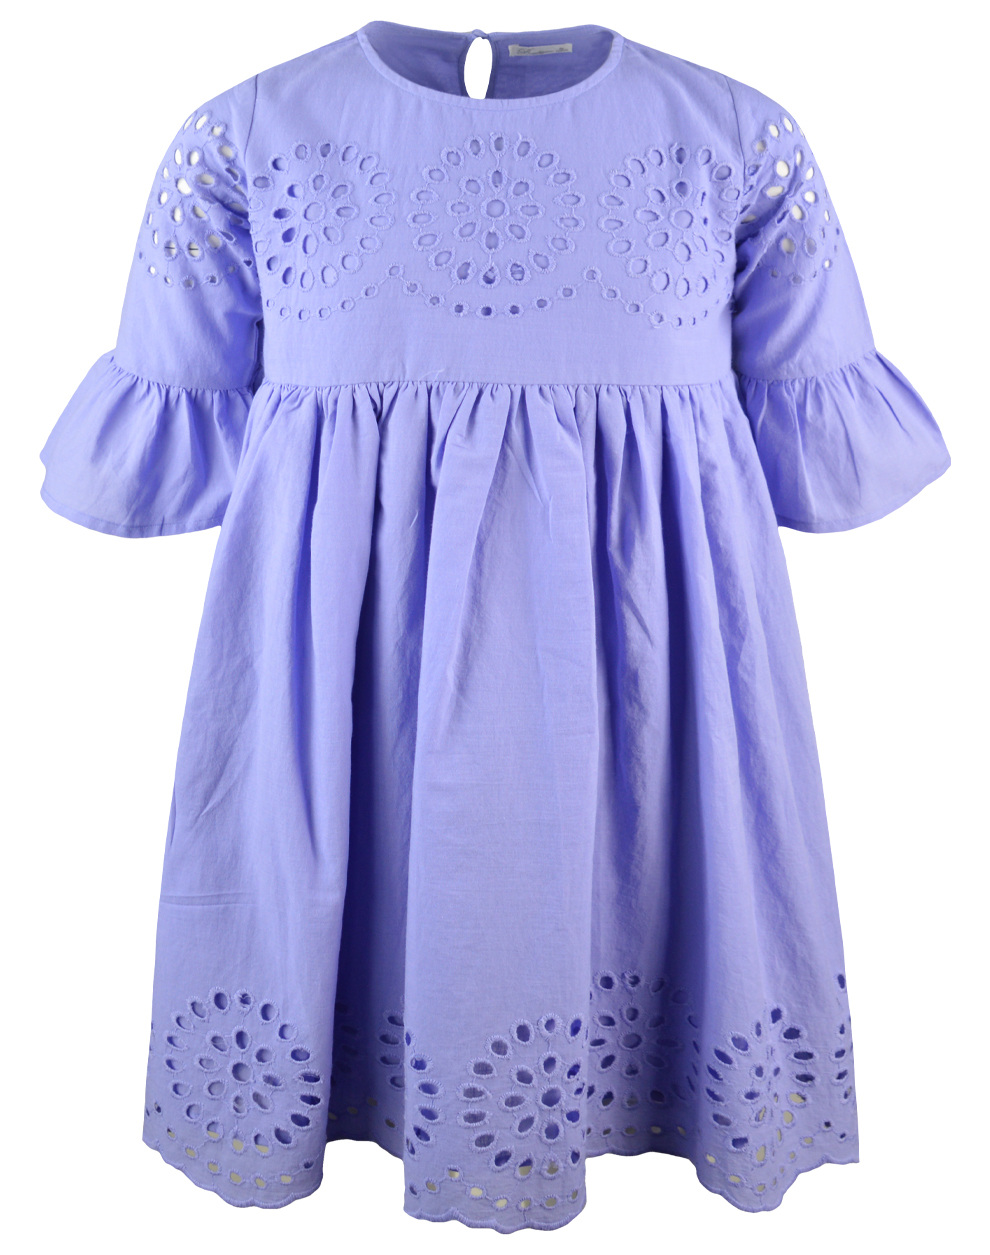 Κοντομάνικο κεντημένο φόρεμα για κορίτσι για επίσημες εμφανίσεις | ΛΙΛΑ ΚΟΡΙΤΣΙ 6-16>Φόρεμα